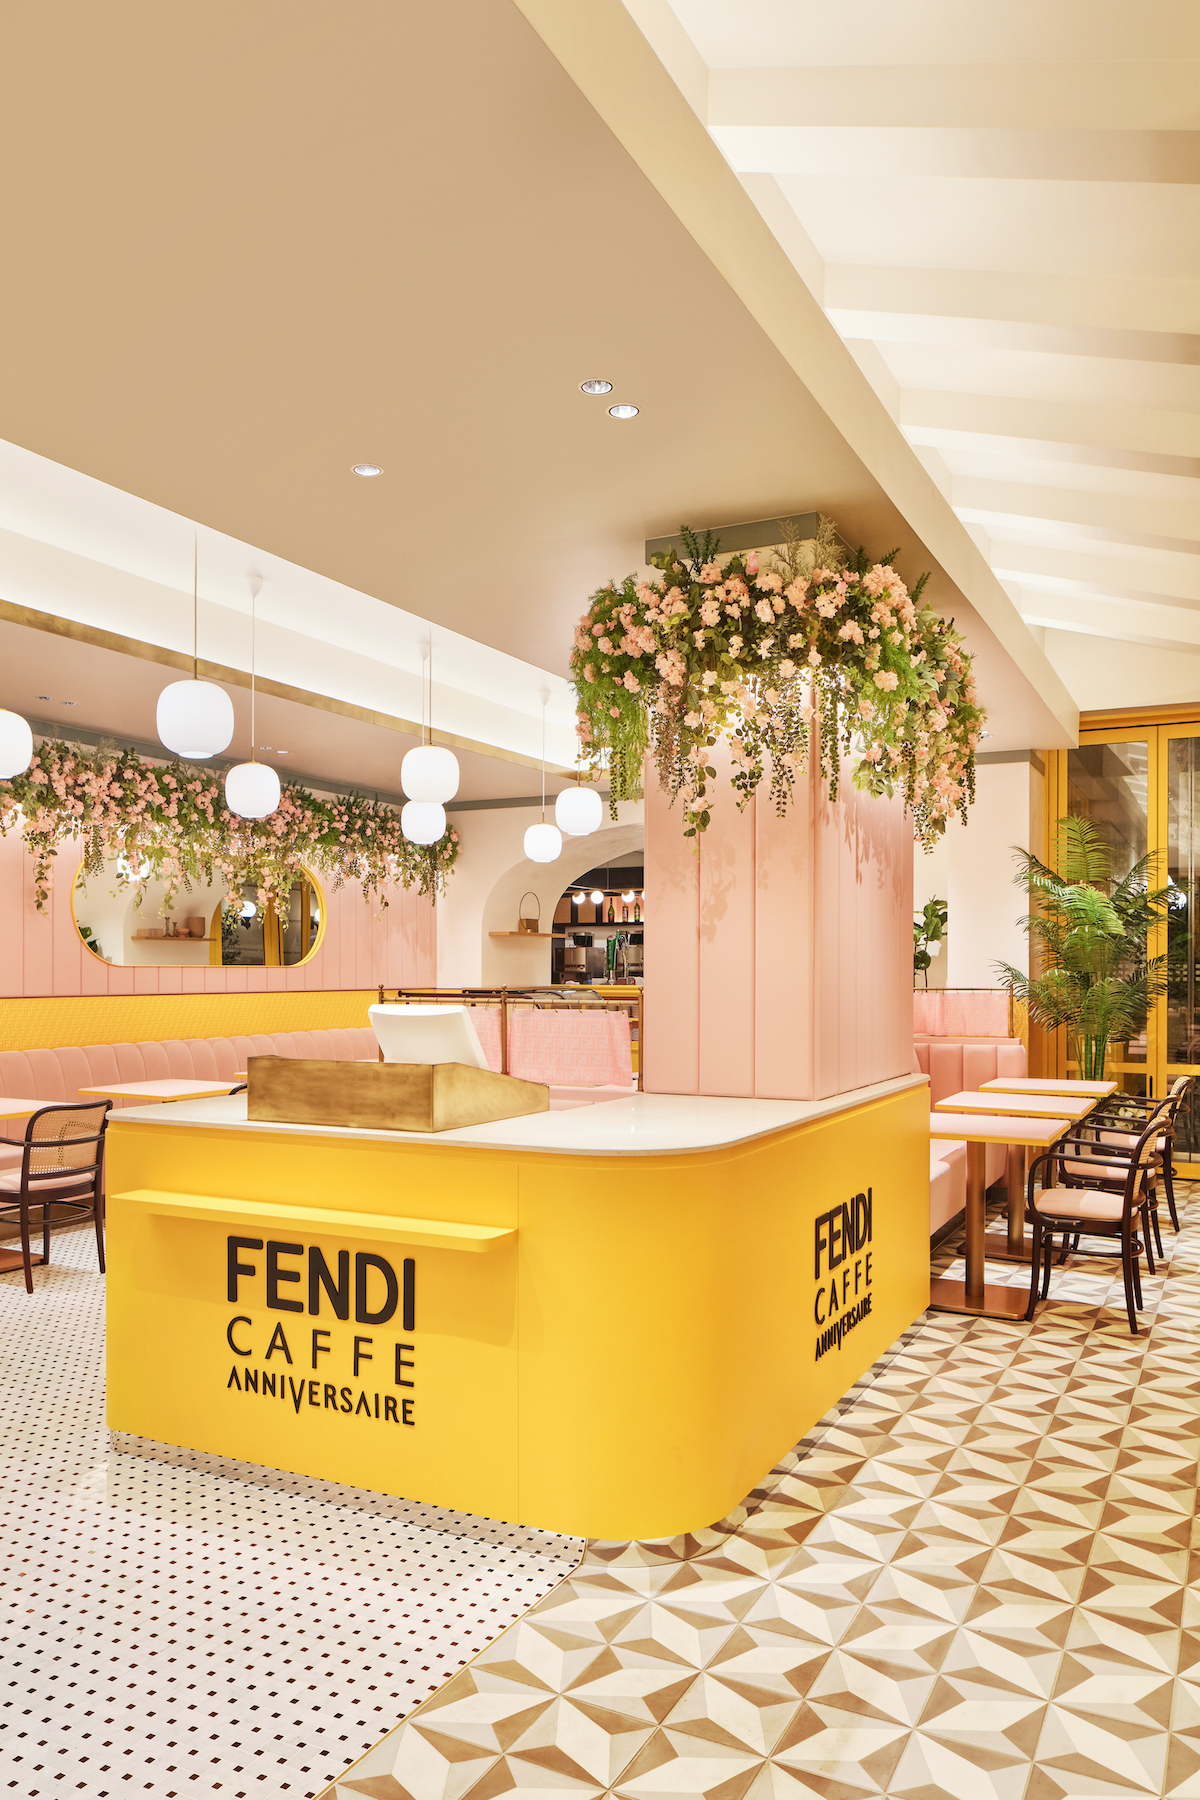 フェンディ カフェ が日本初上陸 アニヴェルセルカフェ 表参道とのコラボで期間限定オープン Wwdjapan Com